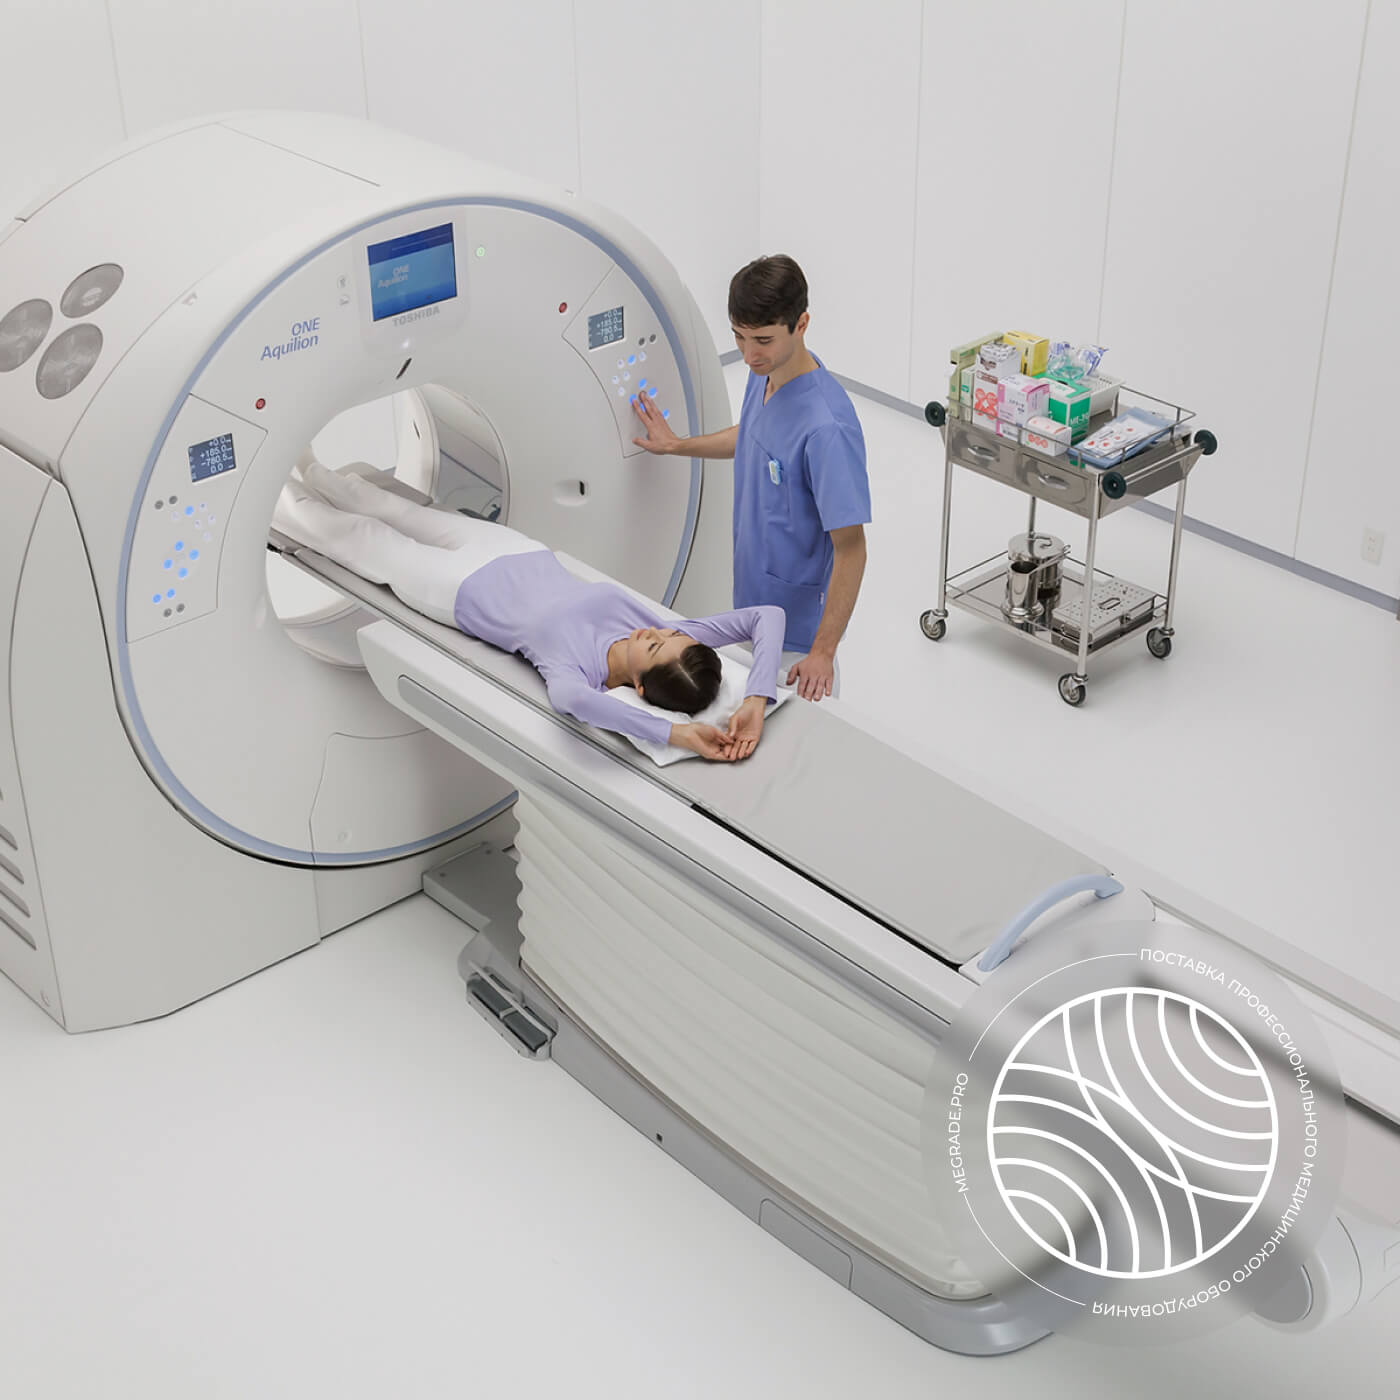 Магнитно-резонансный томограф Canon Elan